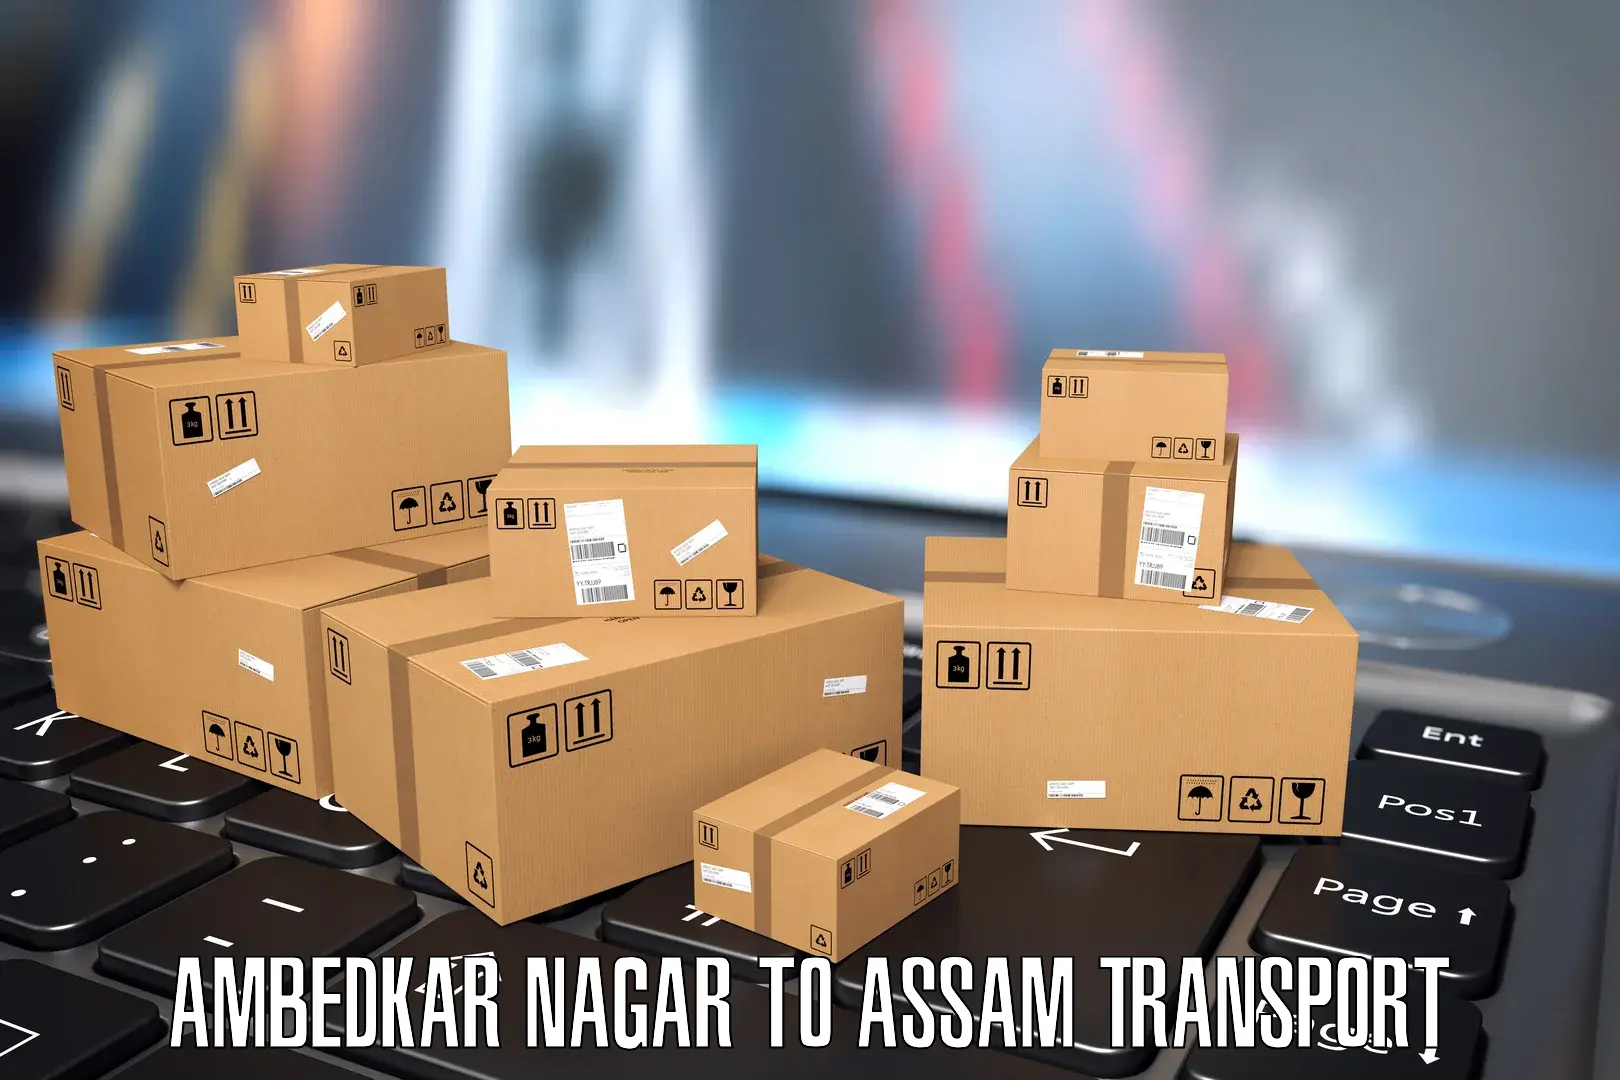 Nearest transport service Ambedkar Nagar to Assam